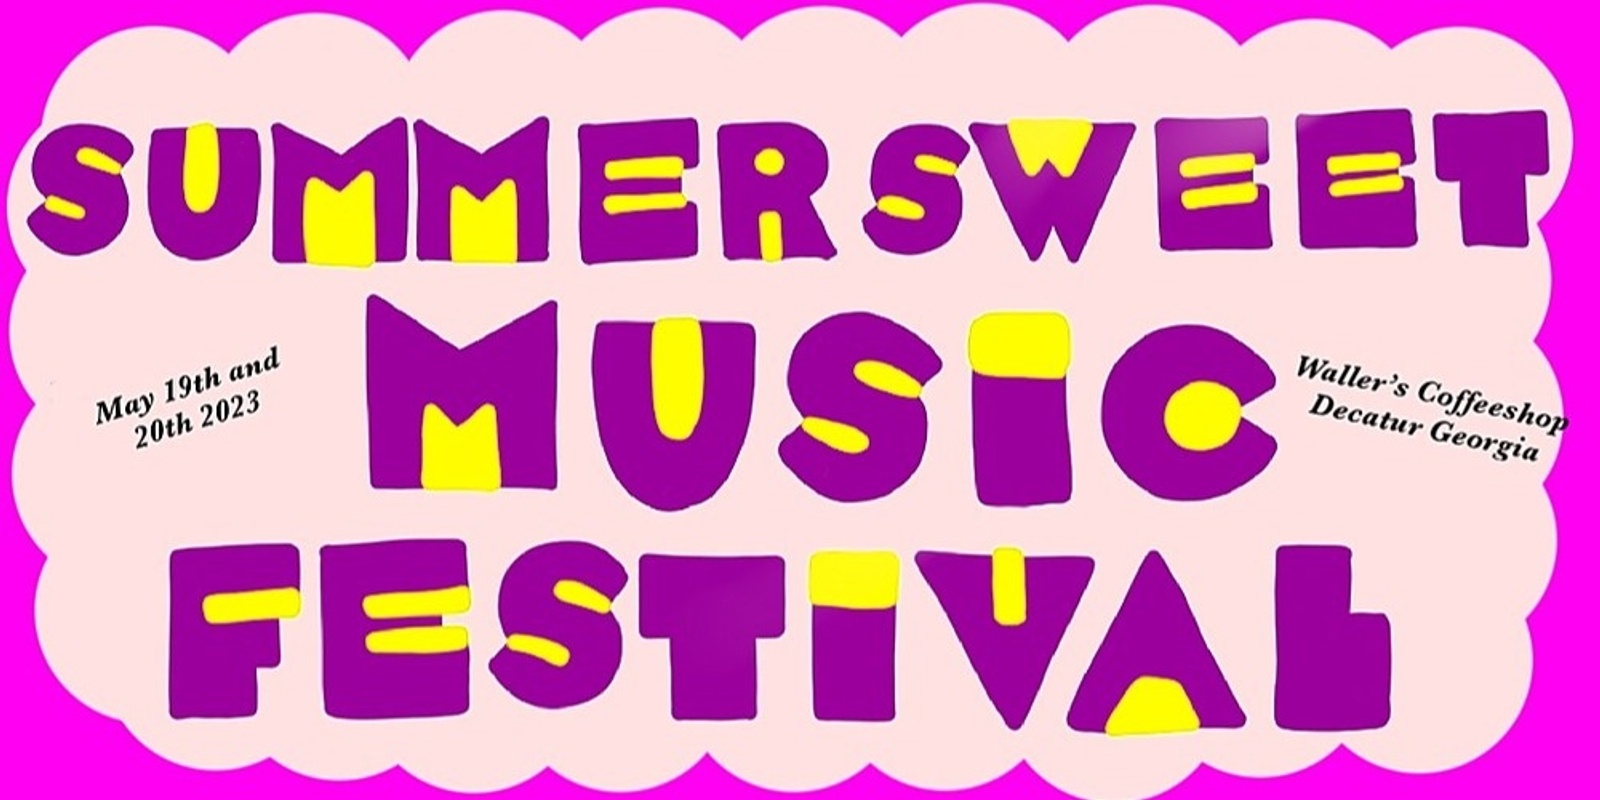 Banner image for SummerSweet Music Festival